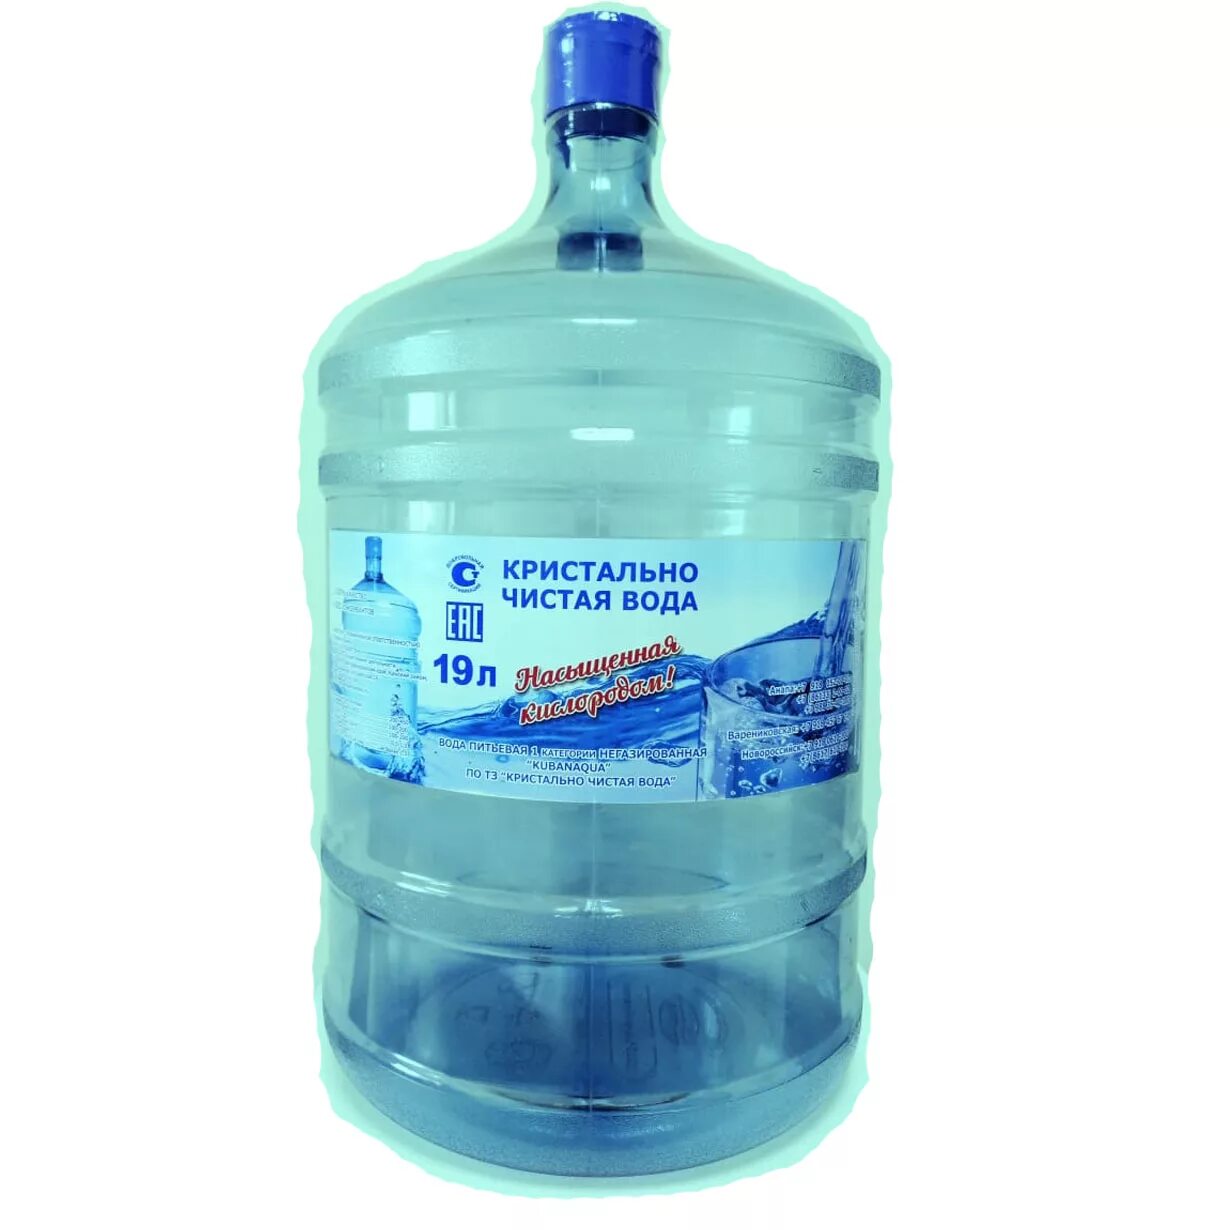 Заказать доставку воды недорого. Вода в бутылях. Бутилированной воды. Чистая вода. Чистая вода в бутылях.